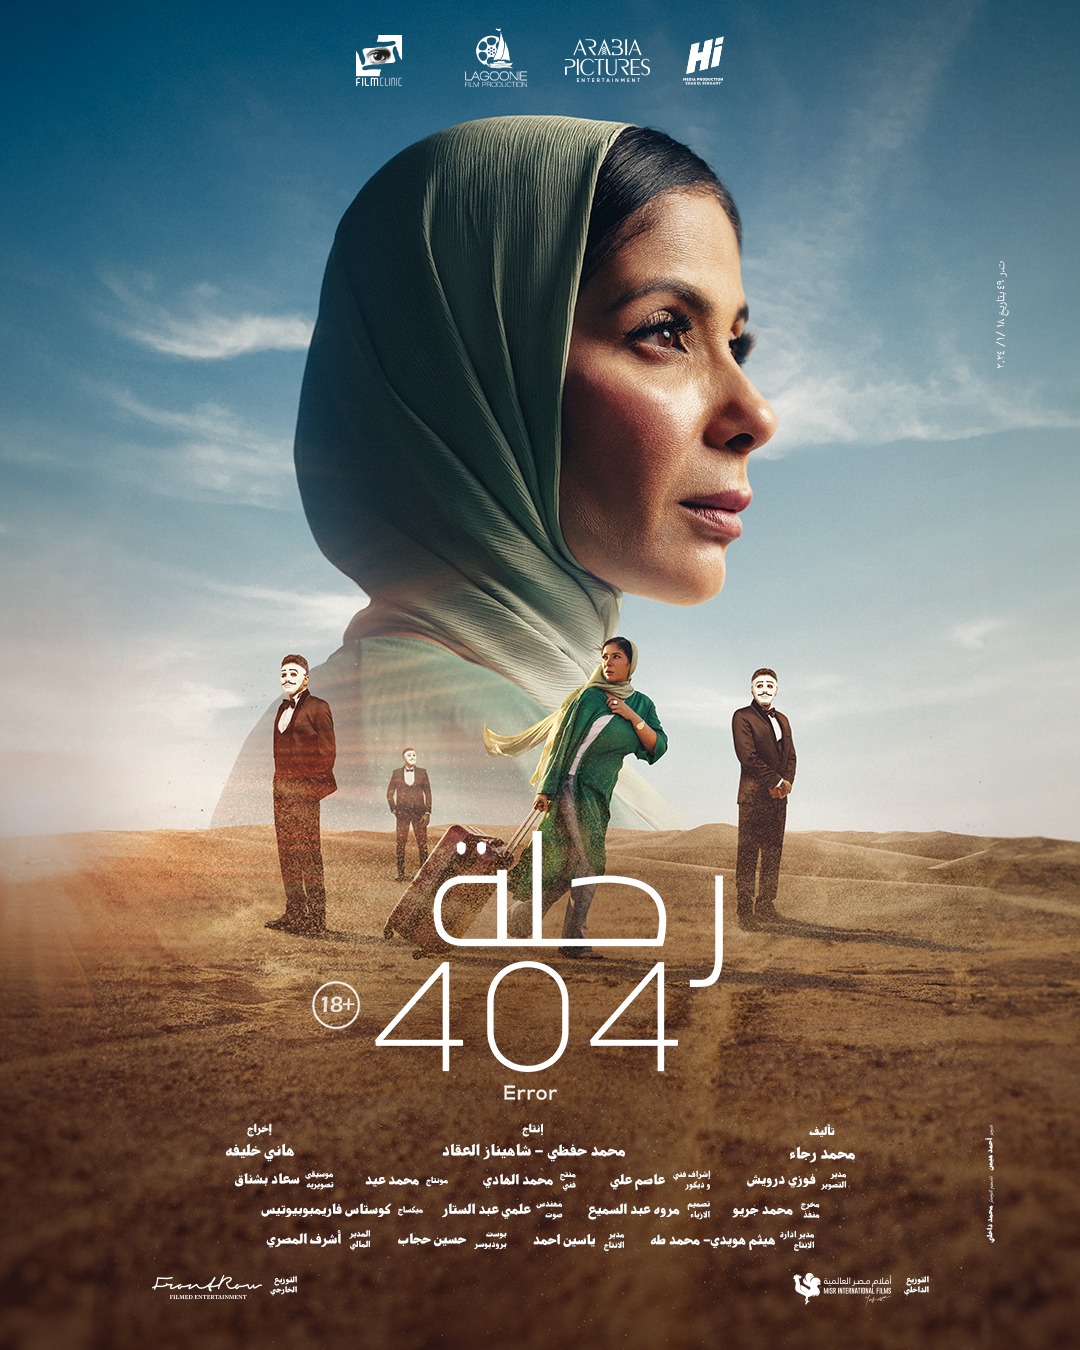 بوسترات جديدة لأبطال فيلم "رحلة 404" لـ منى زكى قبل طرحه بالسينمات 25 يناير - اليوم السابع